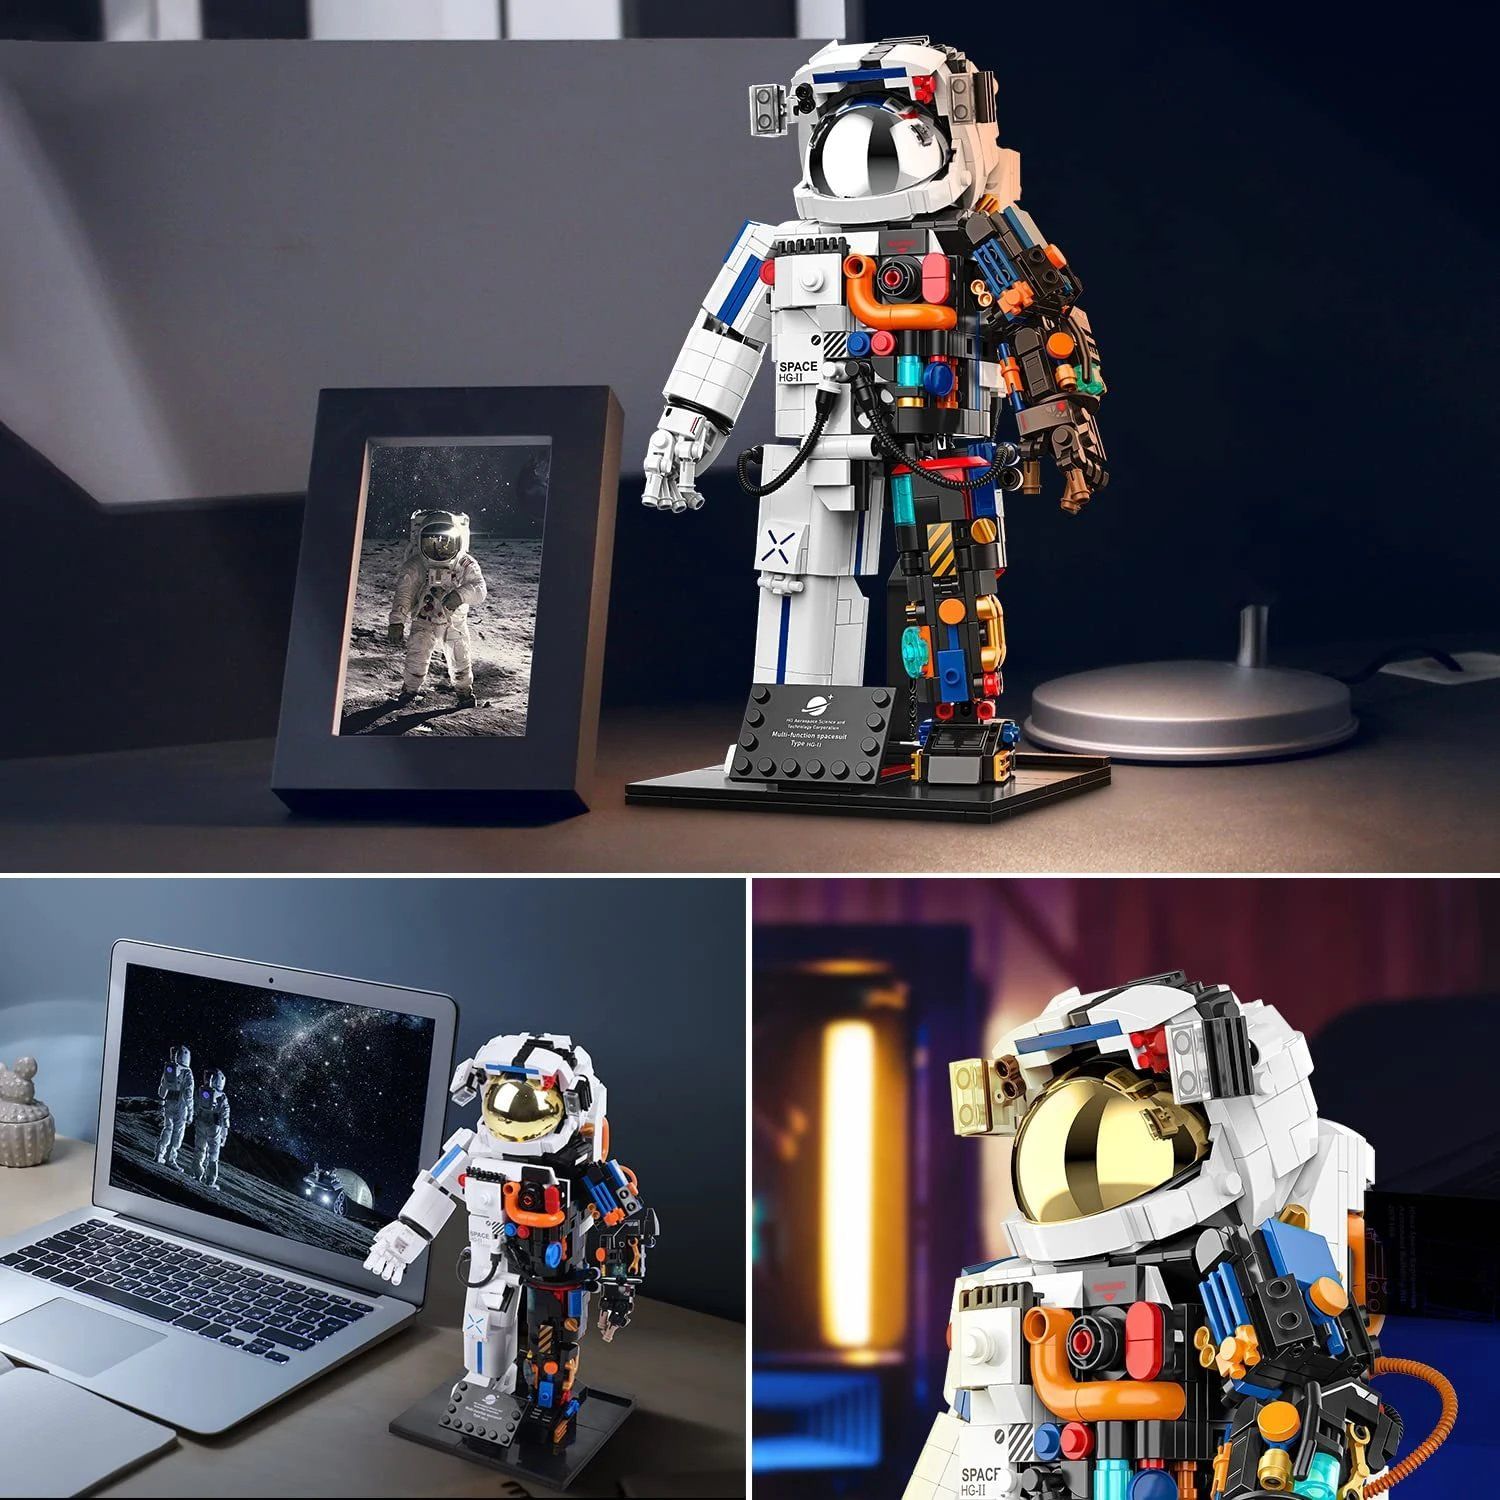  Mô Hình Nhựa 3D Lắp Ráp JAKI Astronaut JK9106 (900 mảnh) - LG0167 